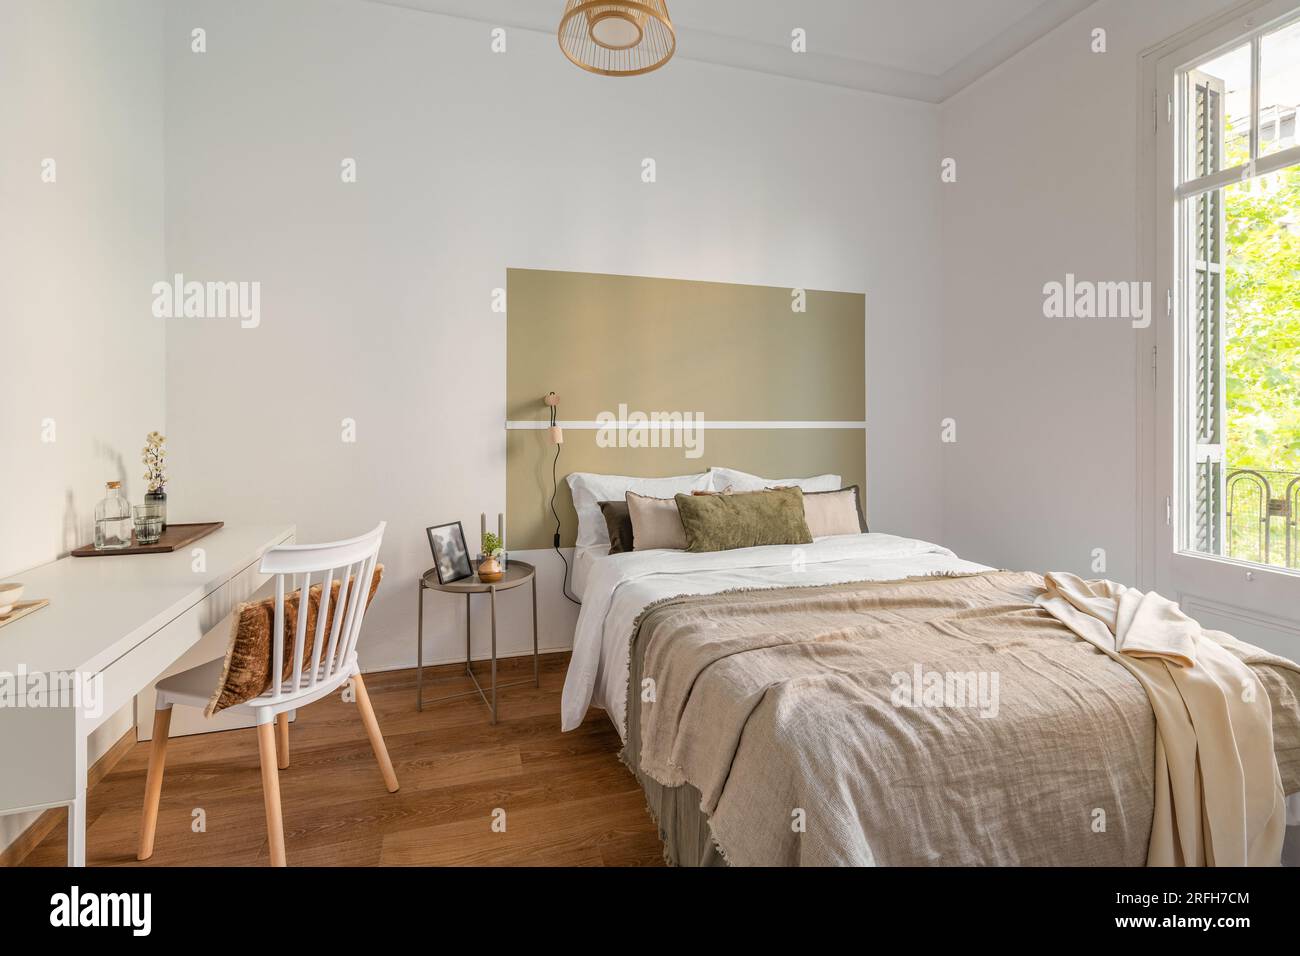 un acogedor dormitorio con elegante decoración un de madera